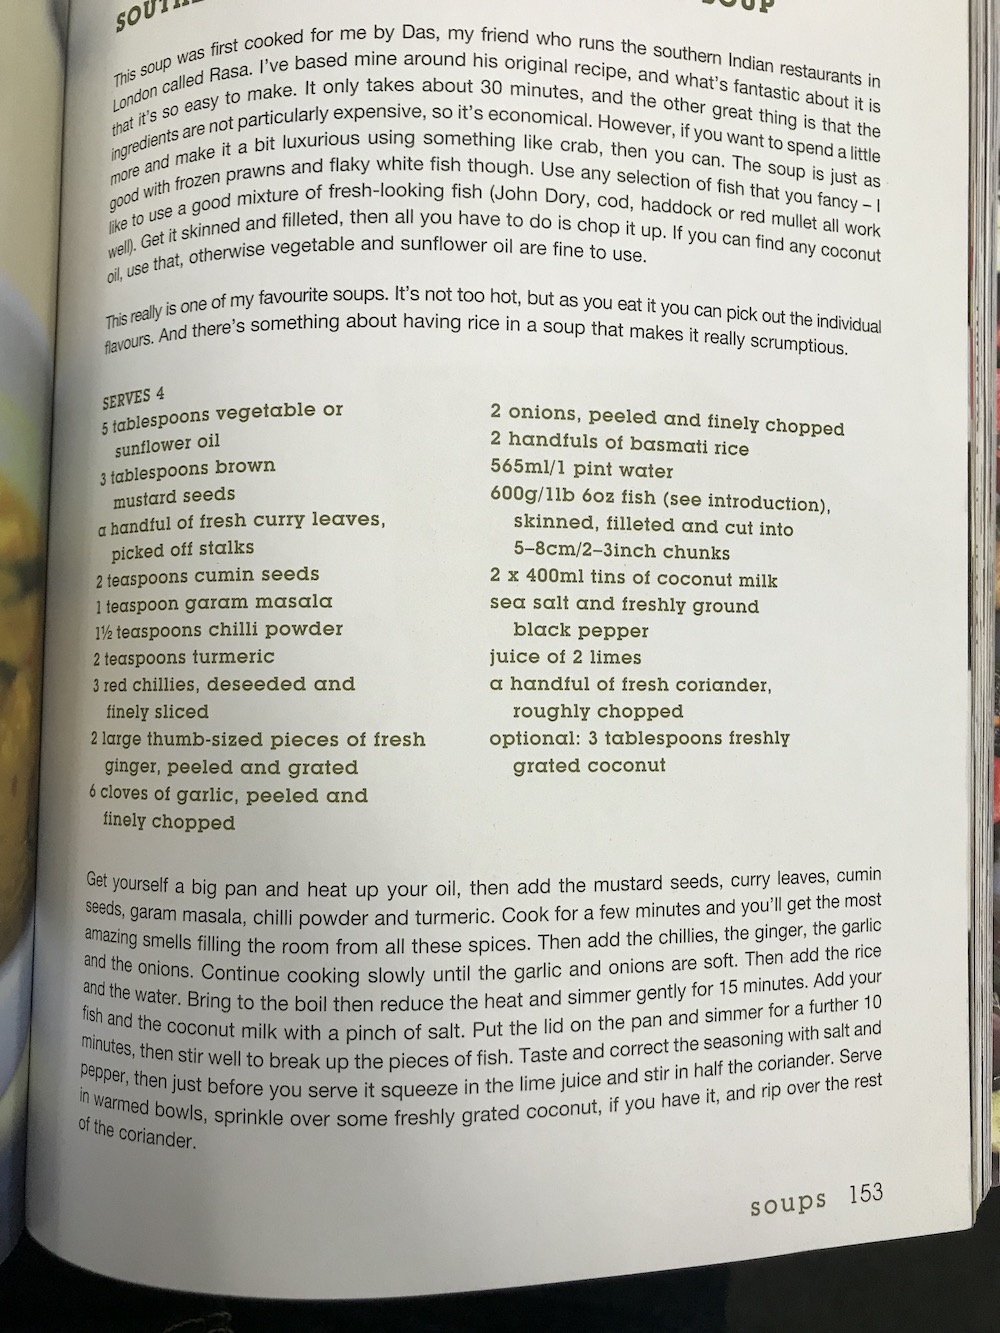 image of a recipe in a book